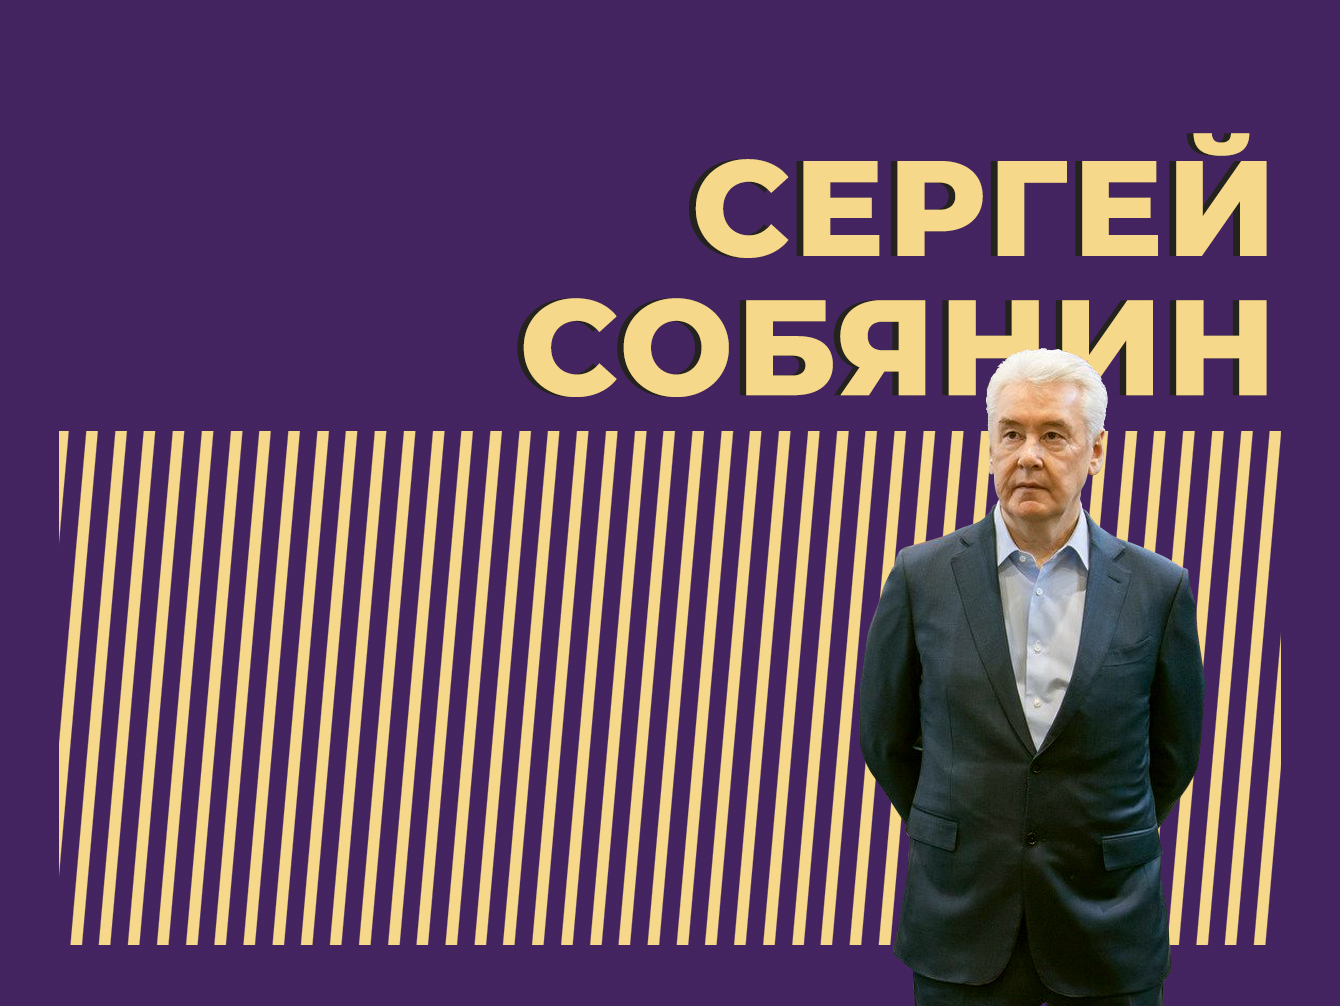 Кто такой Сергей Собянин и как он стал соратником Путина. Только важное и интересное